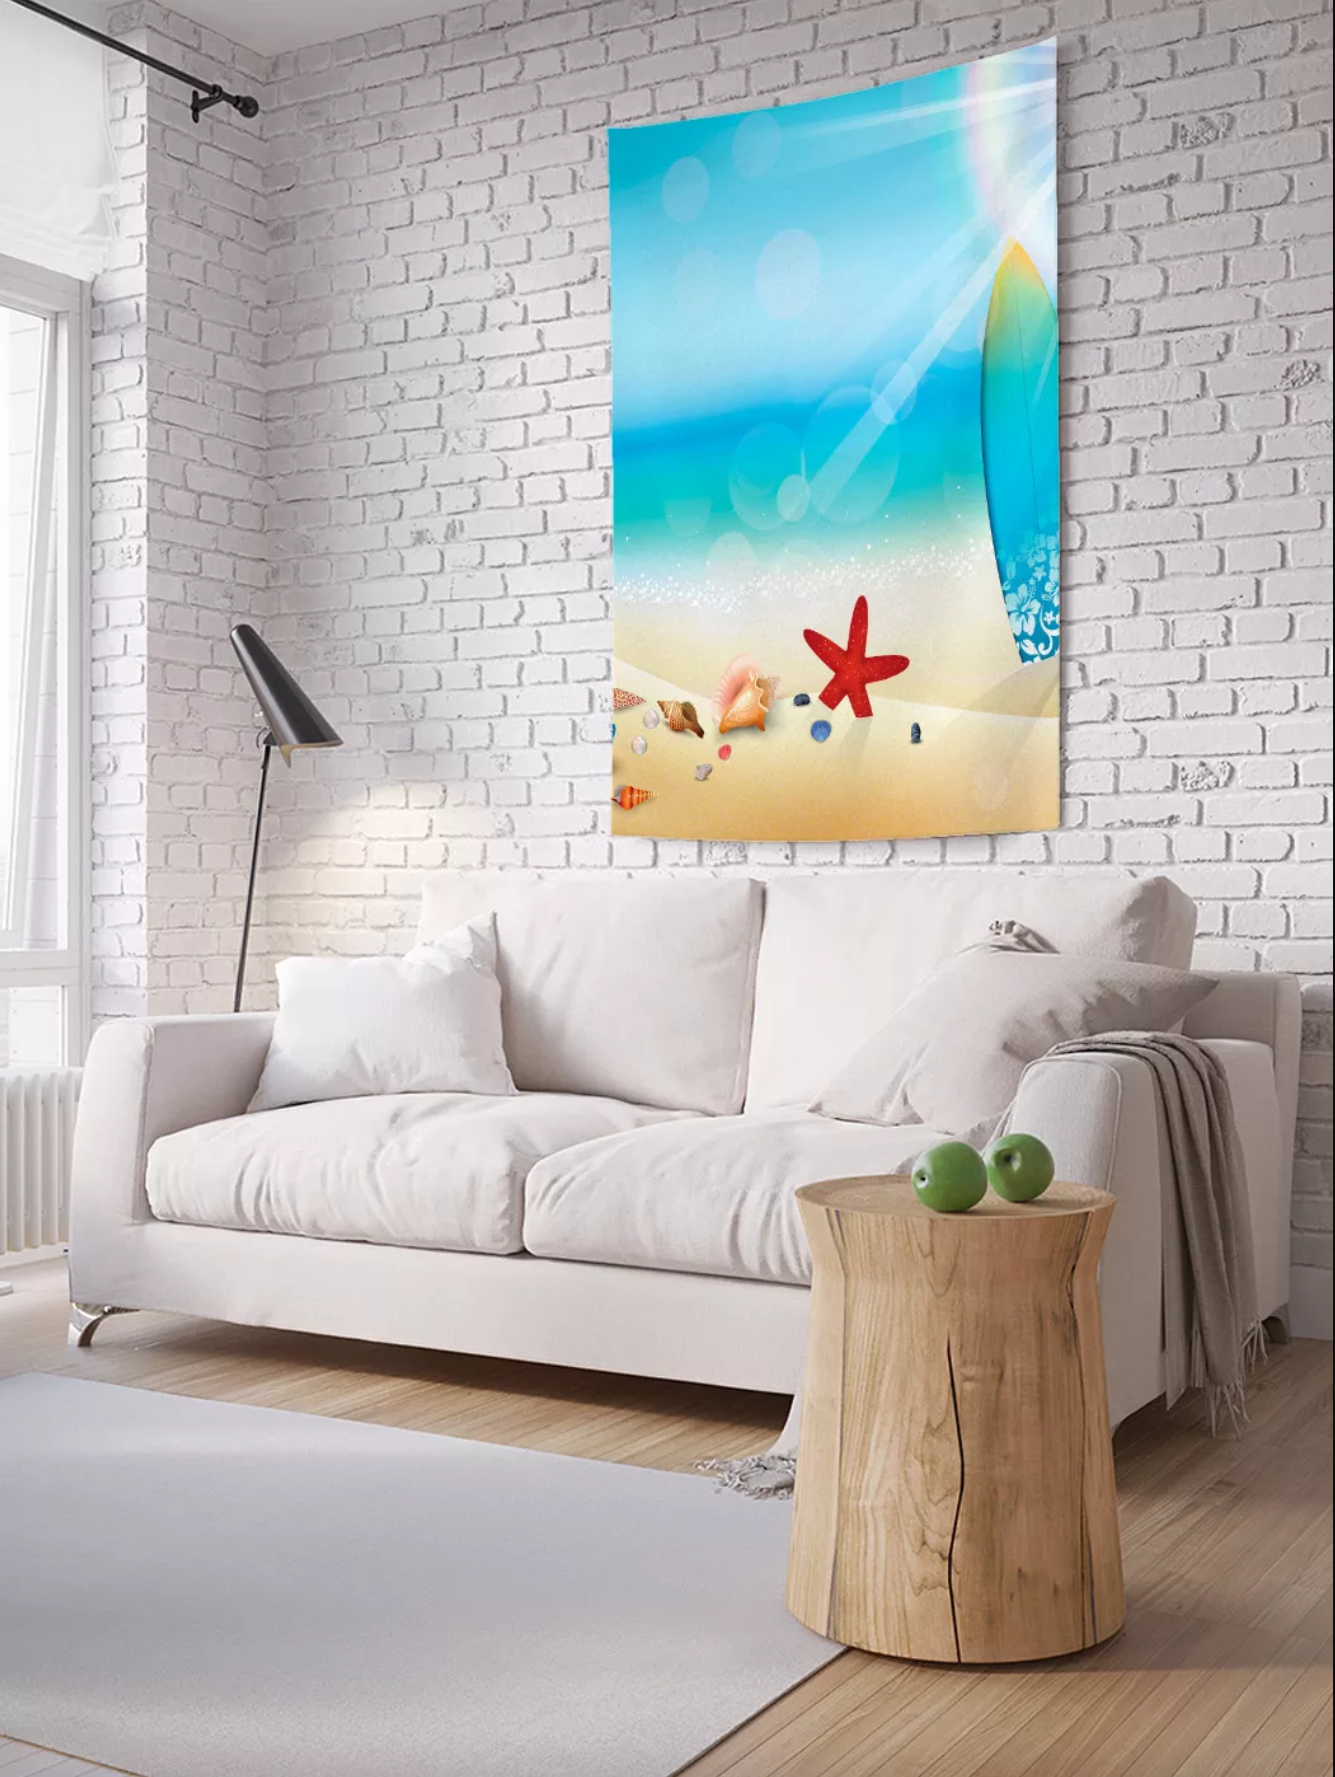 Постер на экокоже 40x50 LinxOne "Мебель, диван, белый, стиль, интерьер" интерьер для дома / декор на стену / дизайн - фотография № 5